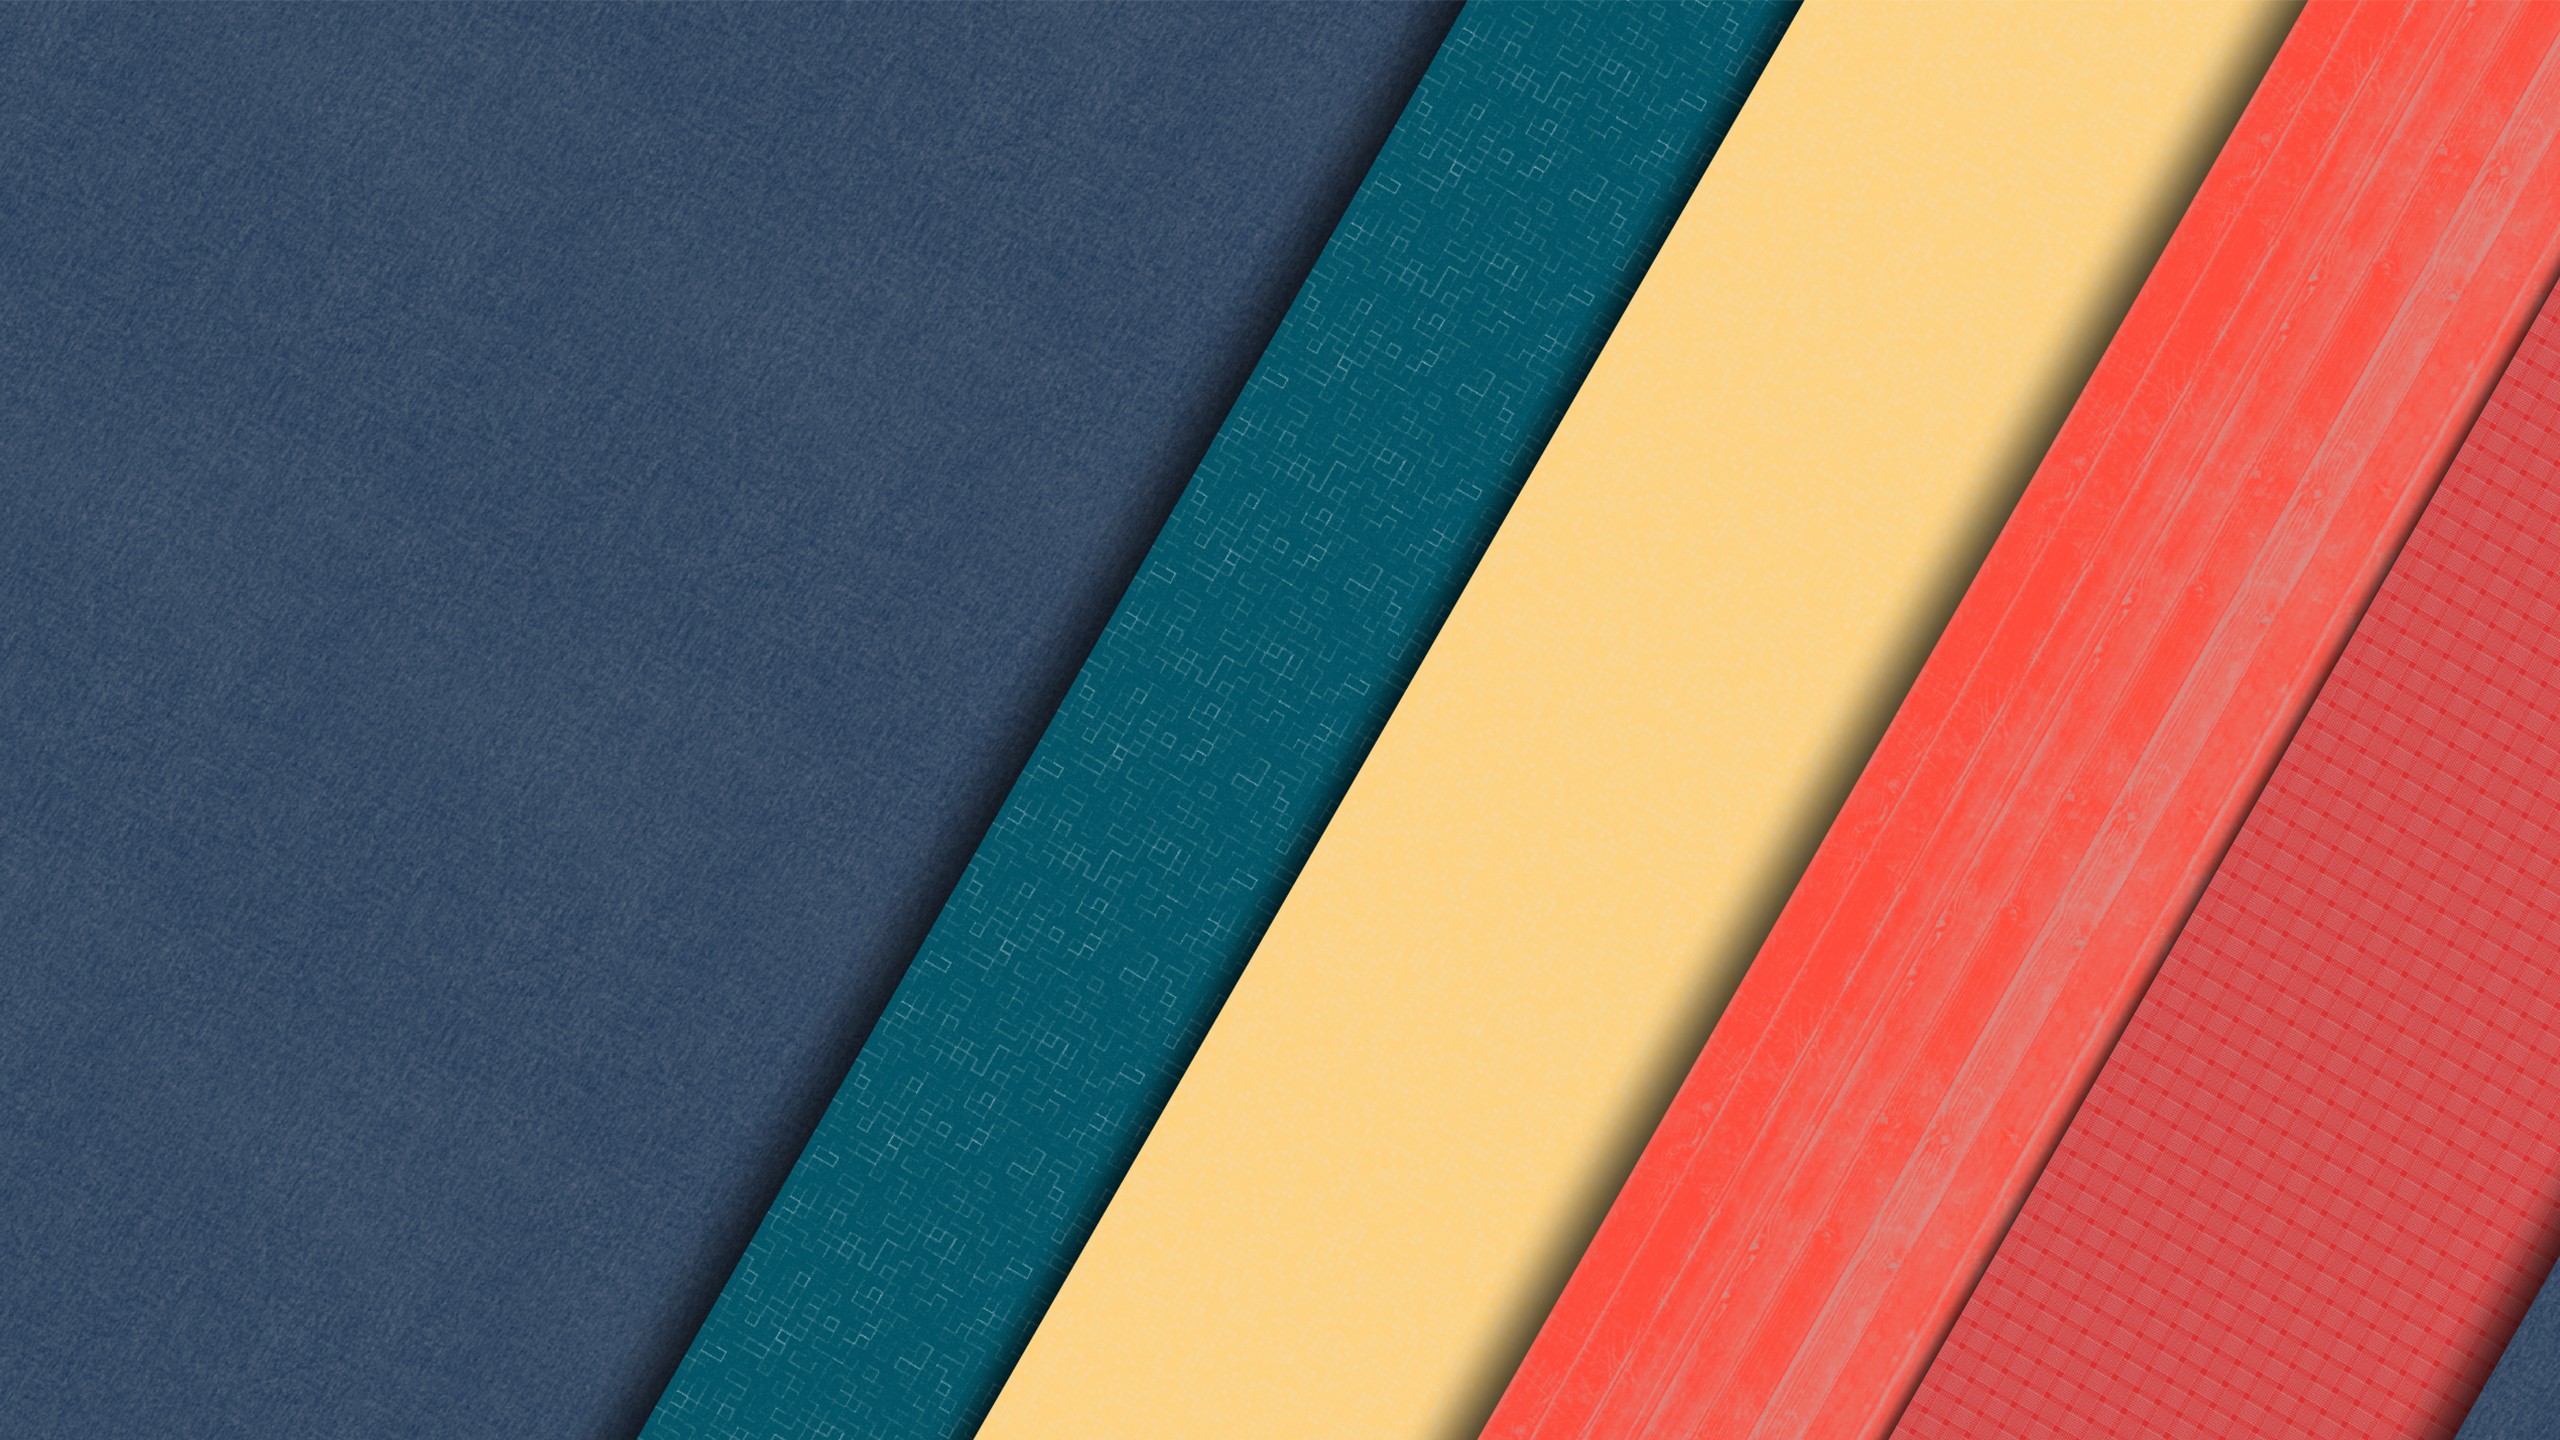 conception matérielle fonds d'écran bureau,bleu,rouge,jaune,turquoise,textile